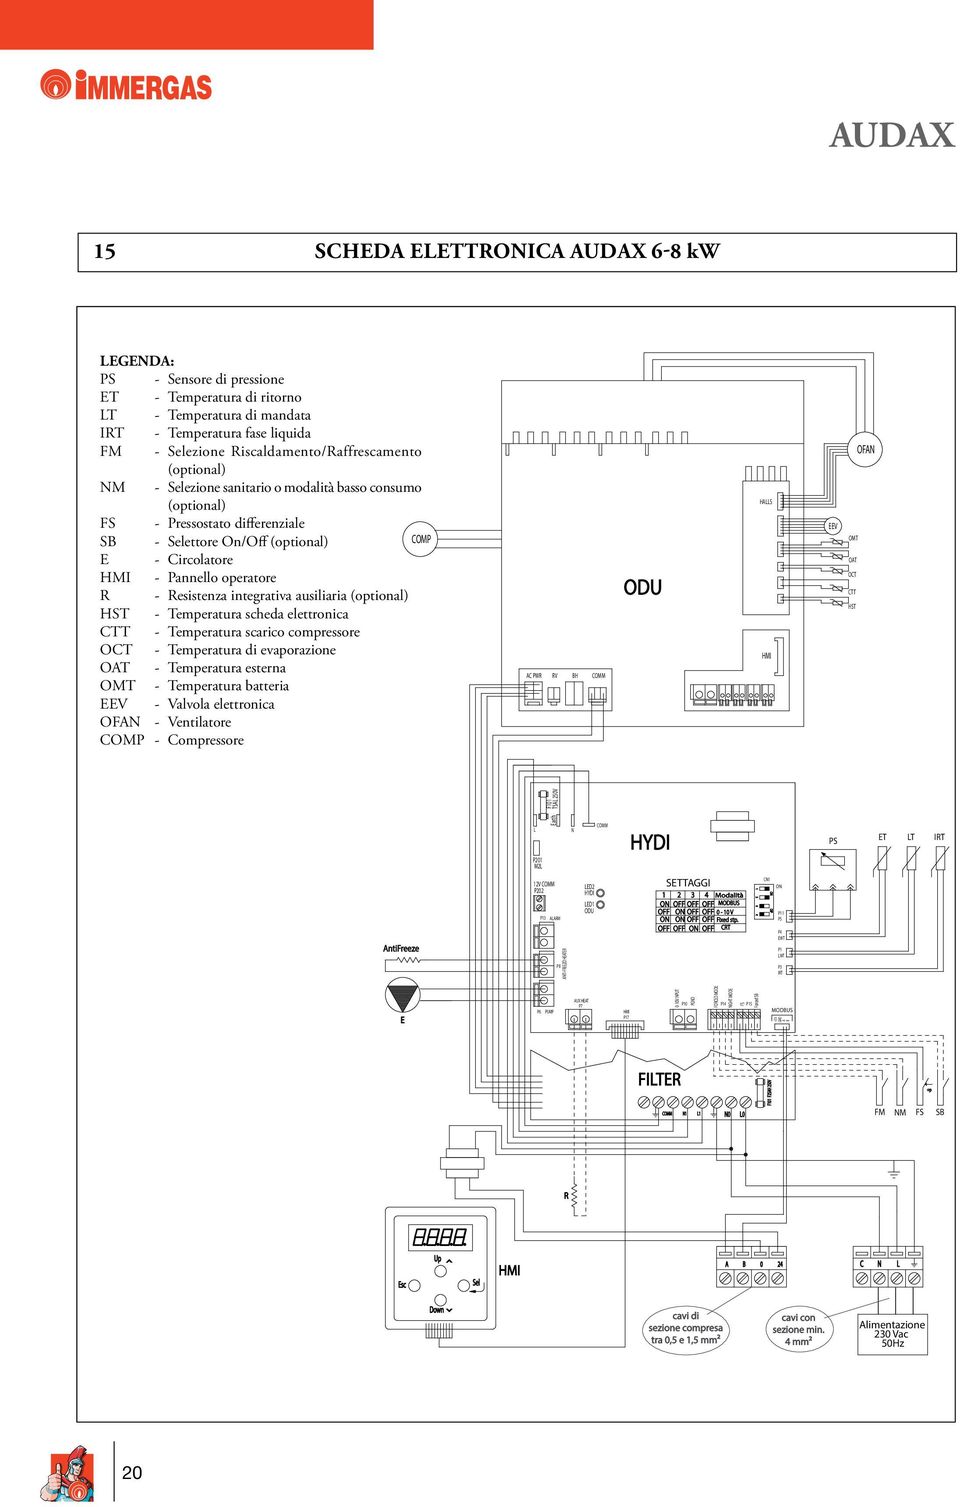 Pannello operatore R - Resistenza integrativa ausiliaria (optional) HST - Temperatura scheda elettronica CTT - Temperatura scarico compressore OCT - Temperatura di evaporazione OAT - Temperatura